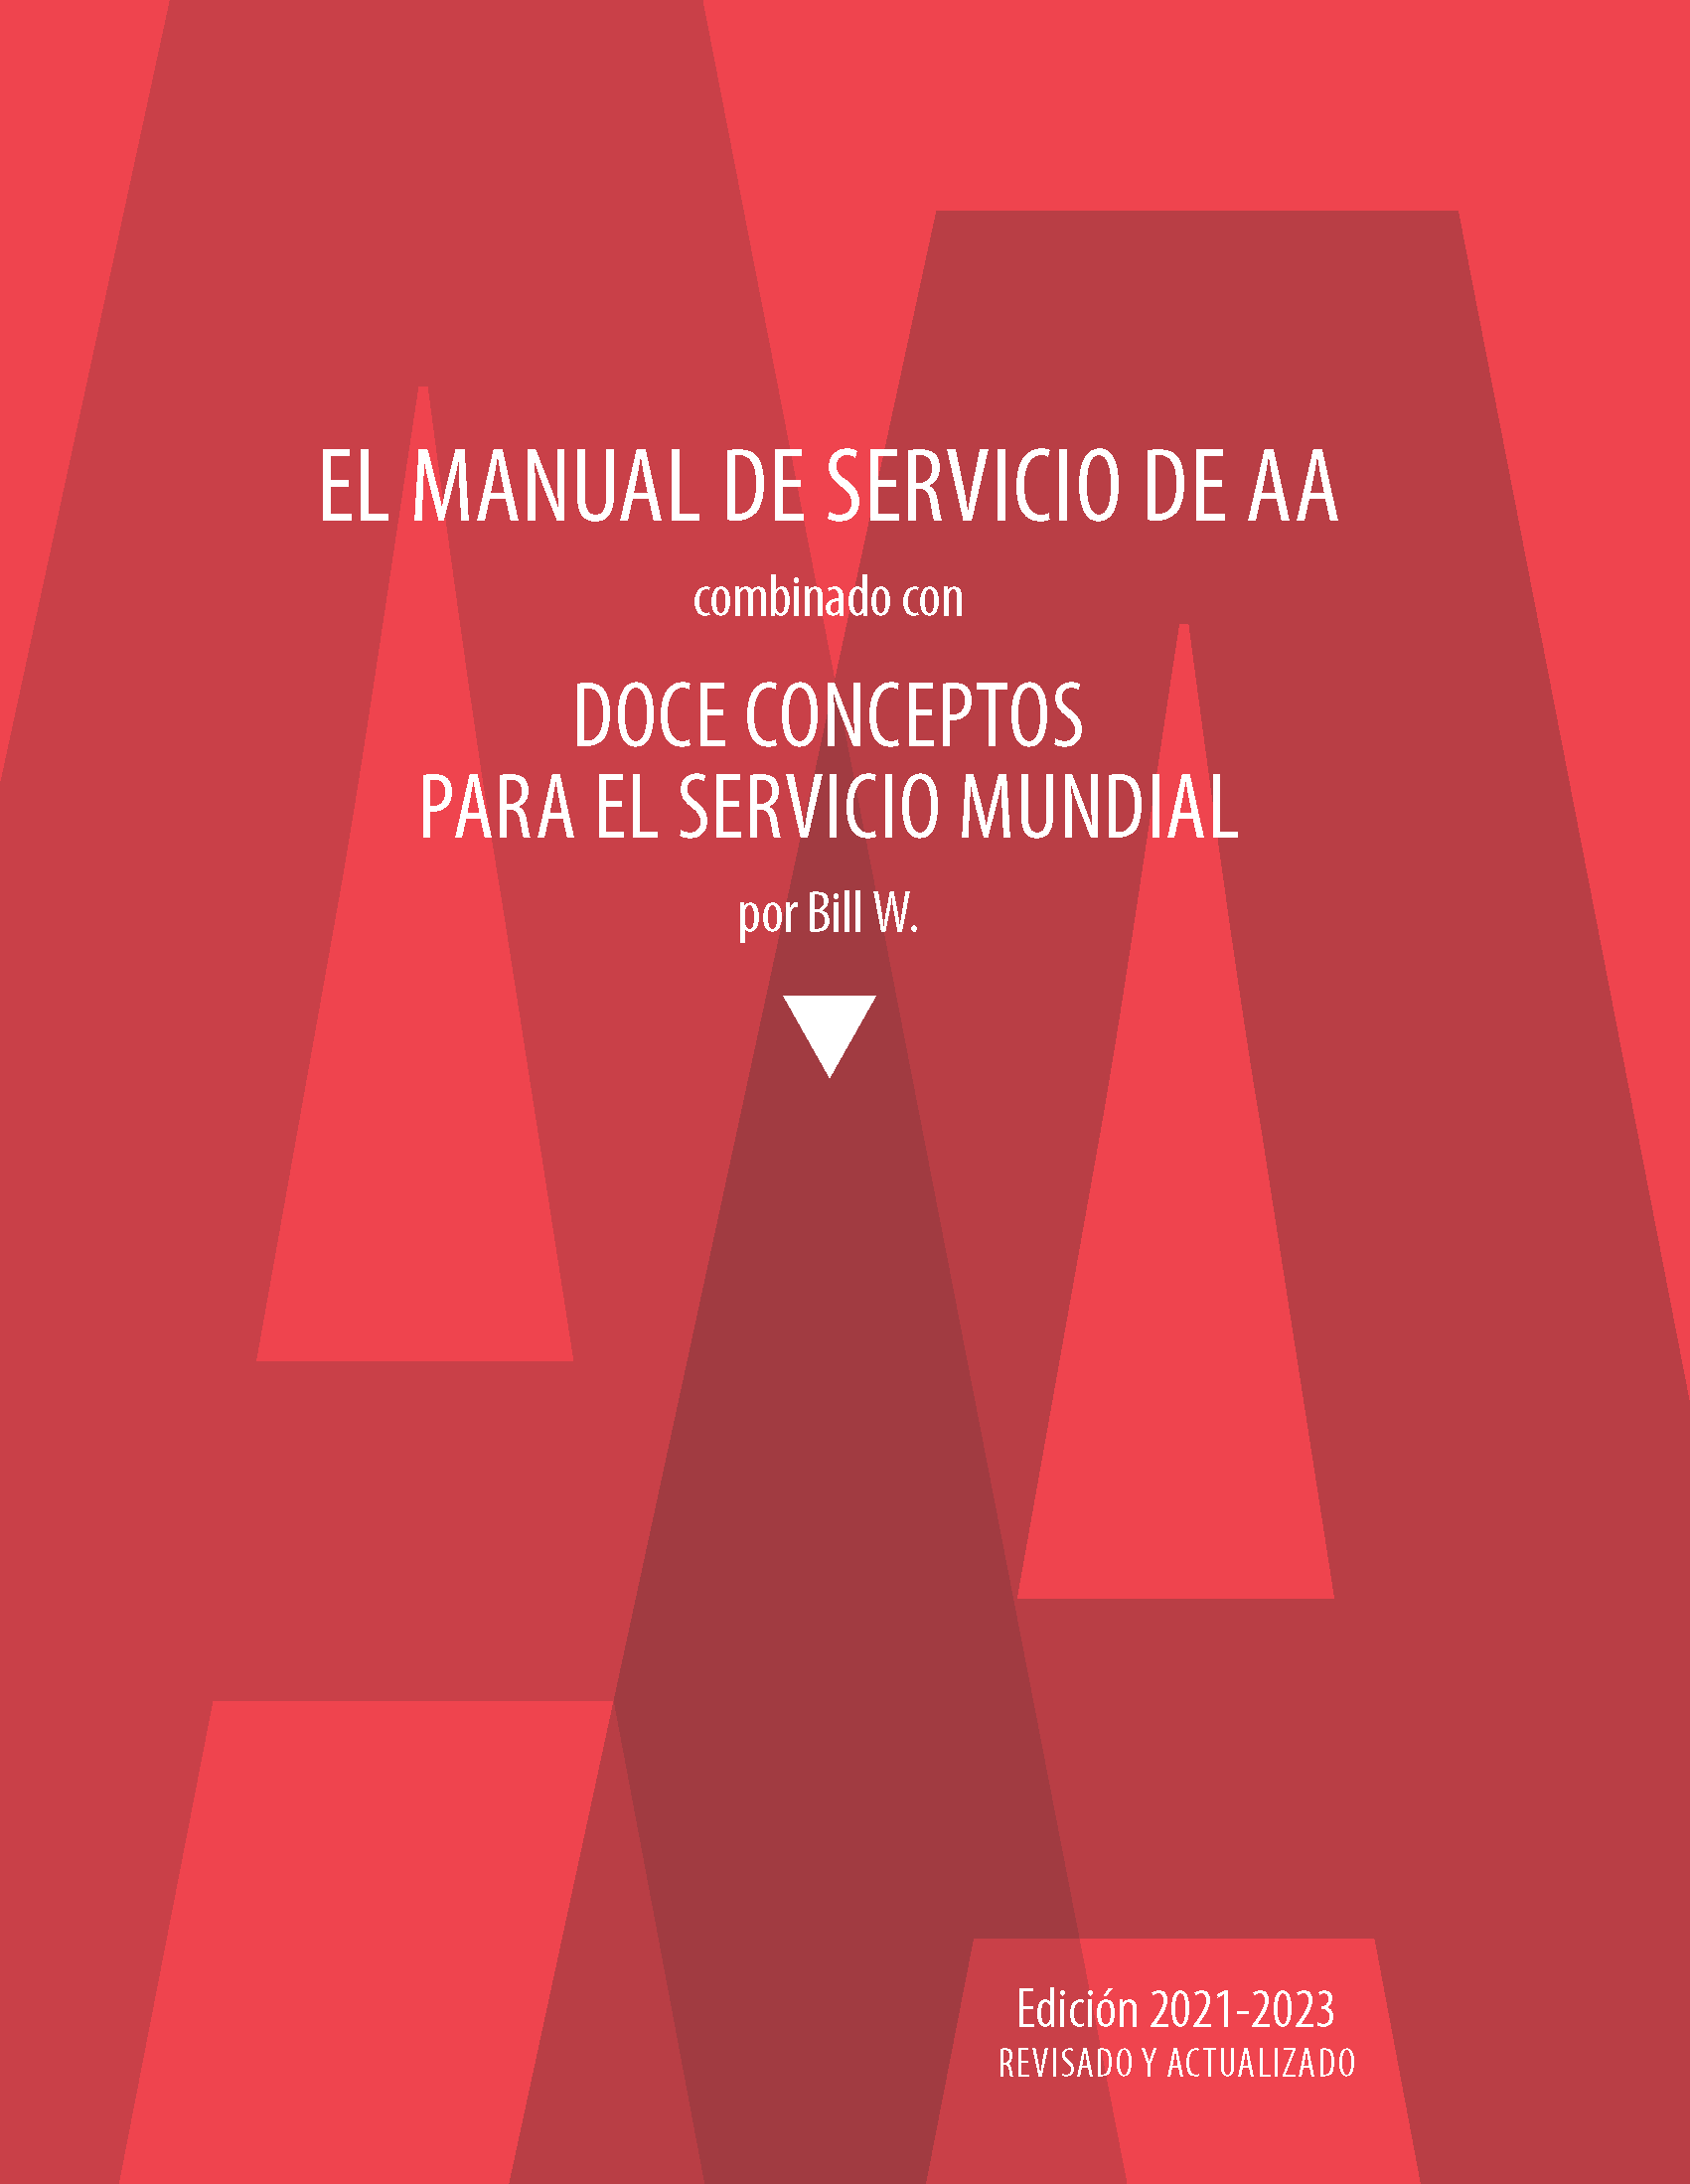 Portada del libro de AA: Manual de Servicio de A.A. y Doce Conceptos para el Servicio Mundial